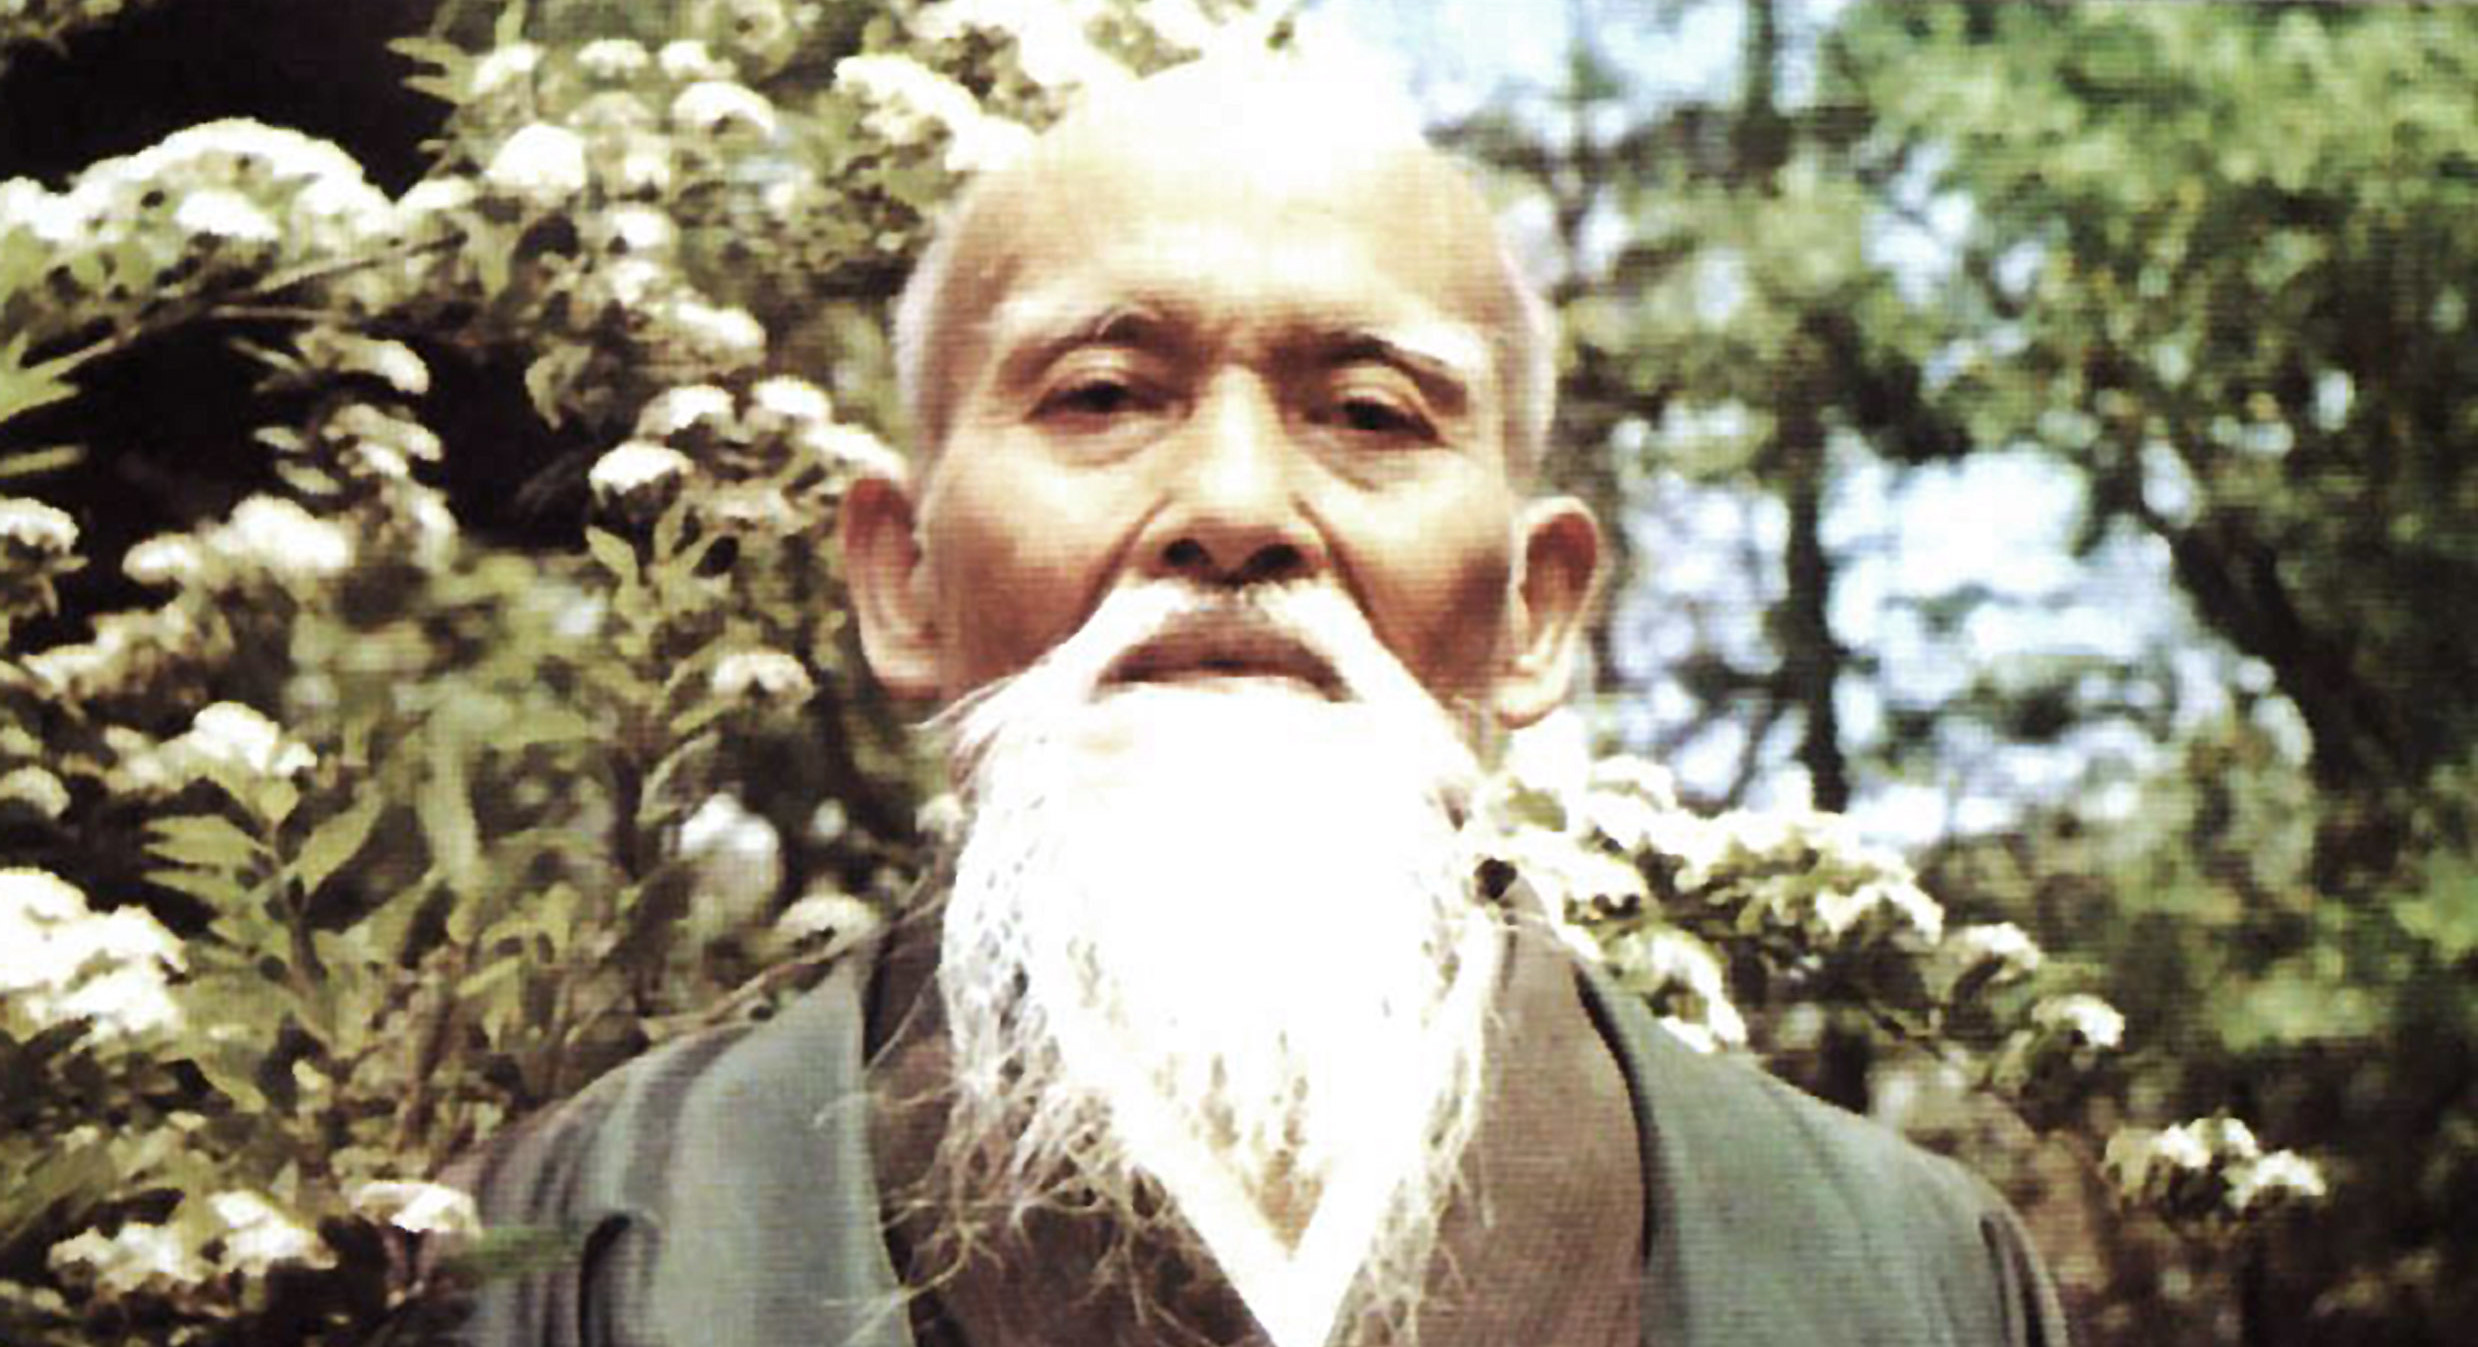 O Sensei, founder of Aikido.